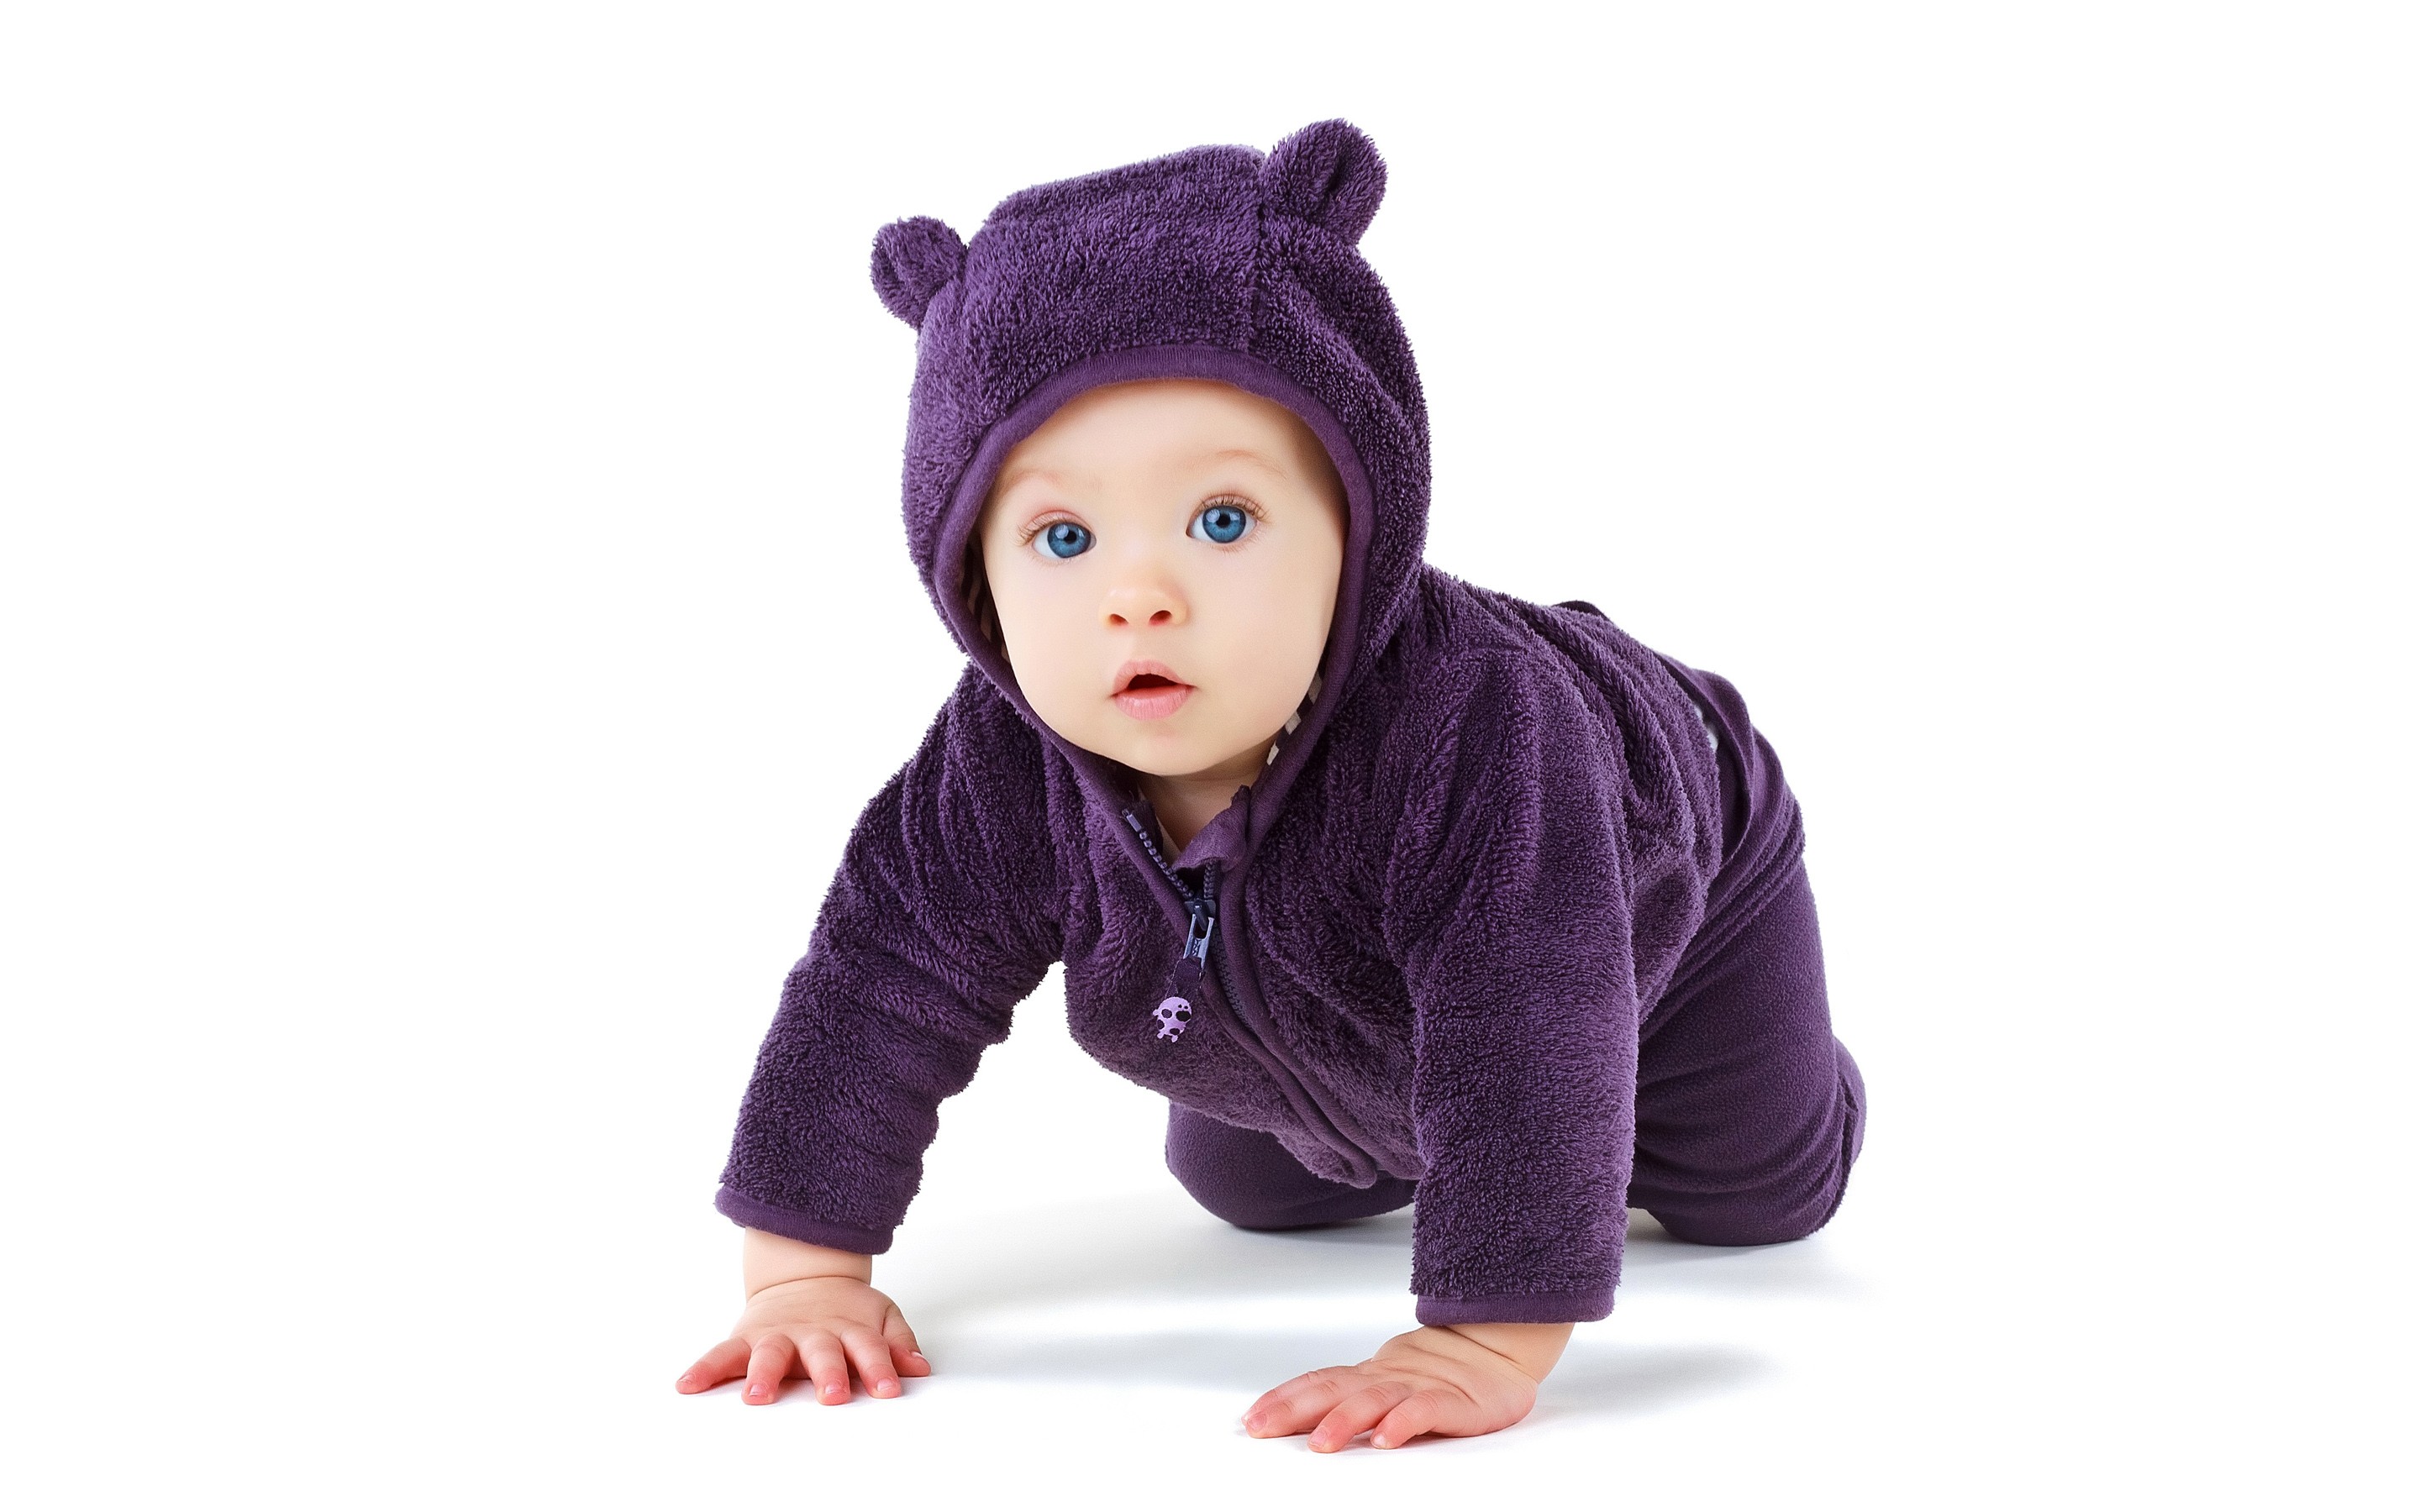 fondos de pantalla de bebé indio para escritorio,niño,púrpura,violeta,niñito,gorro